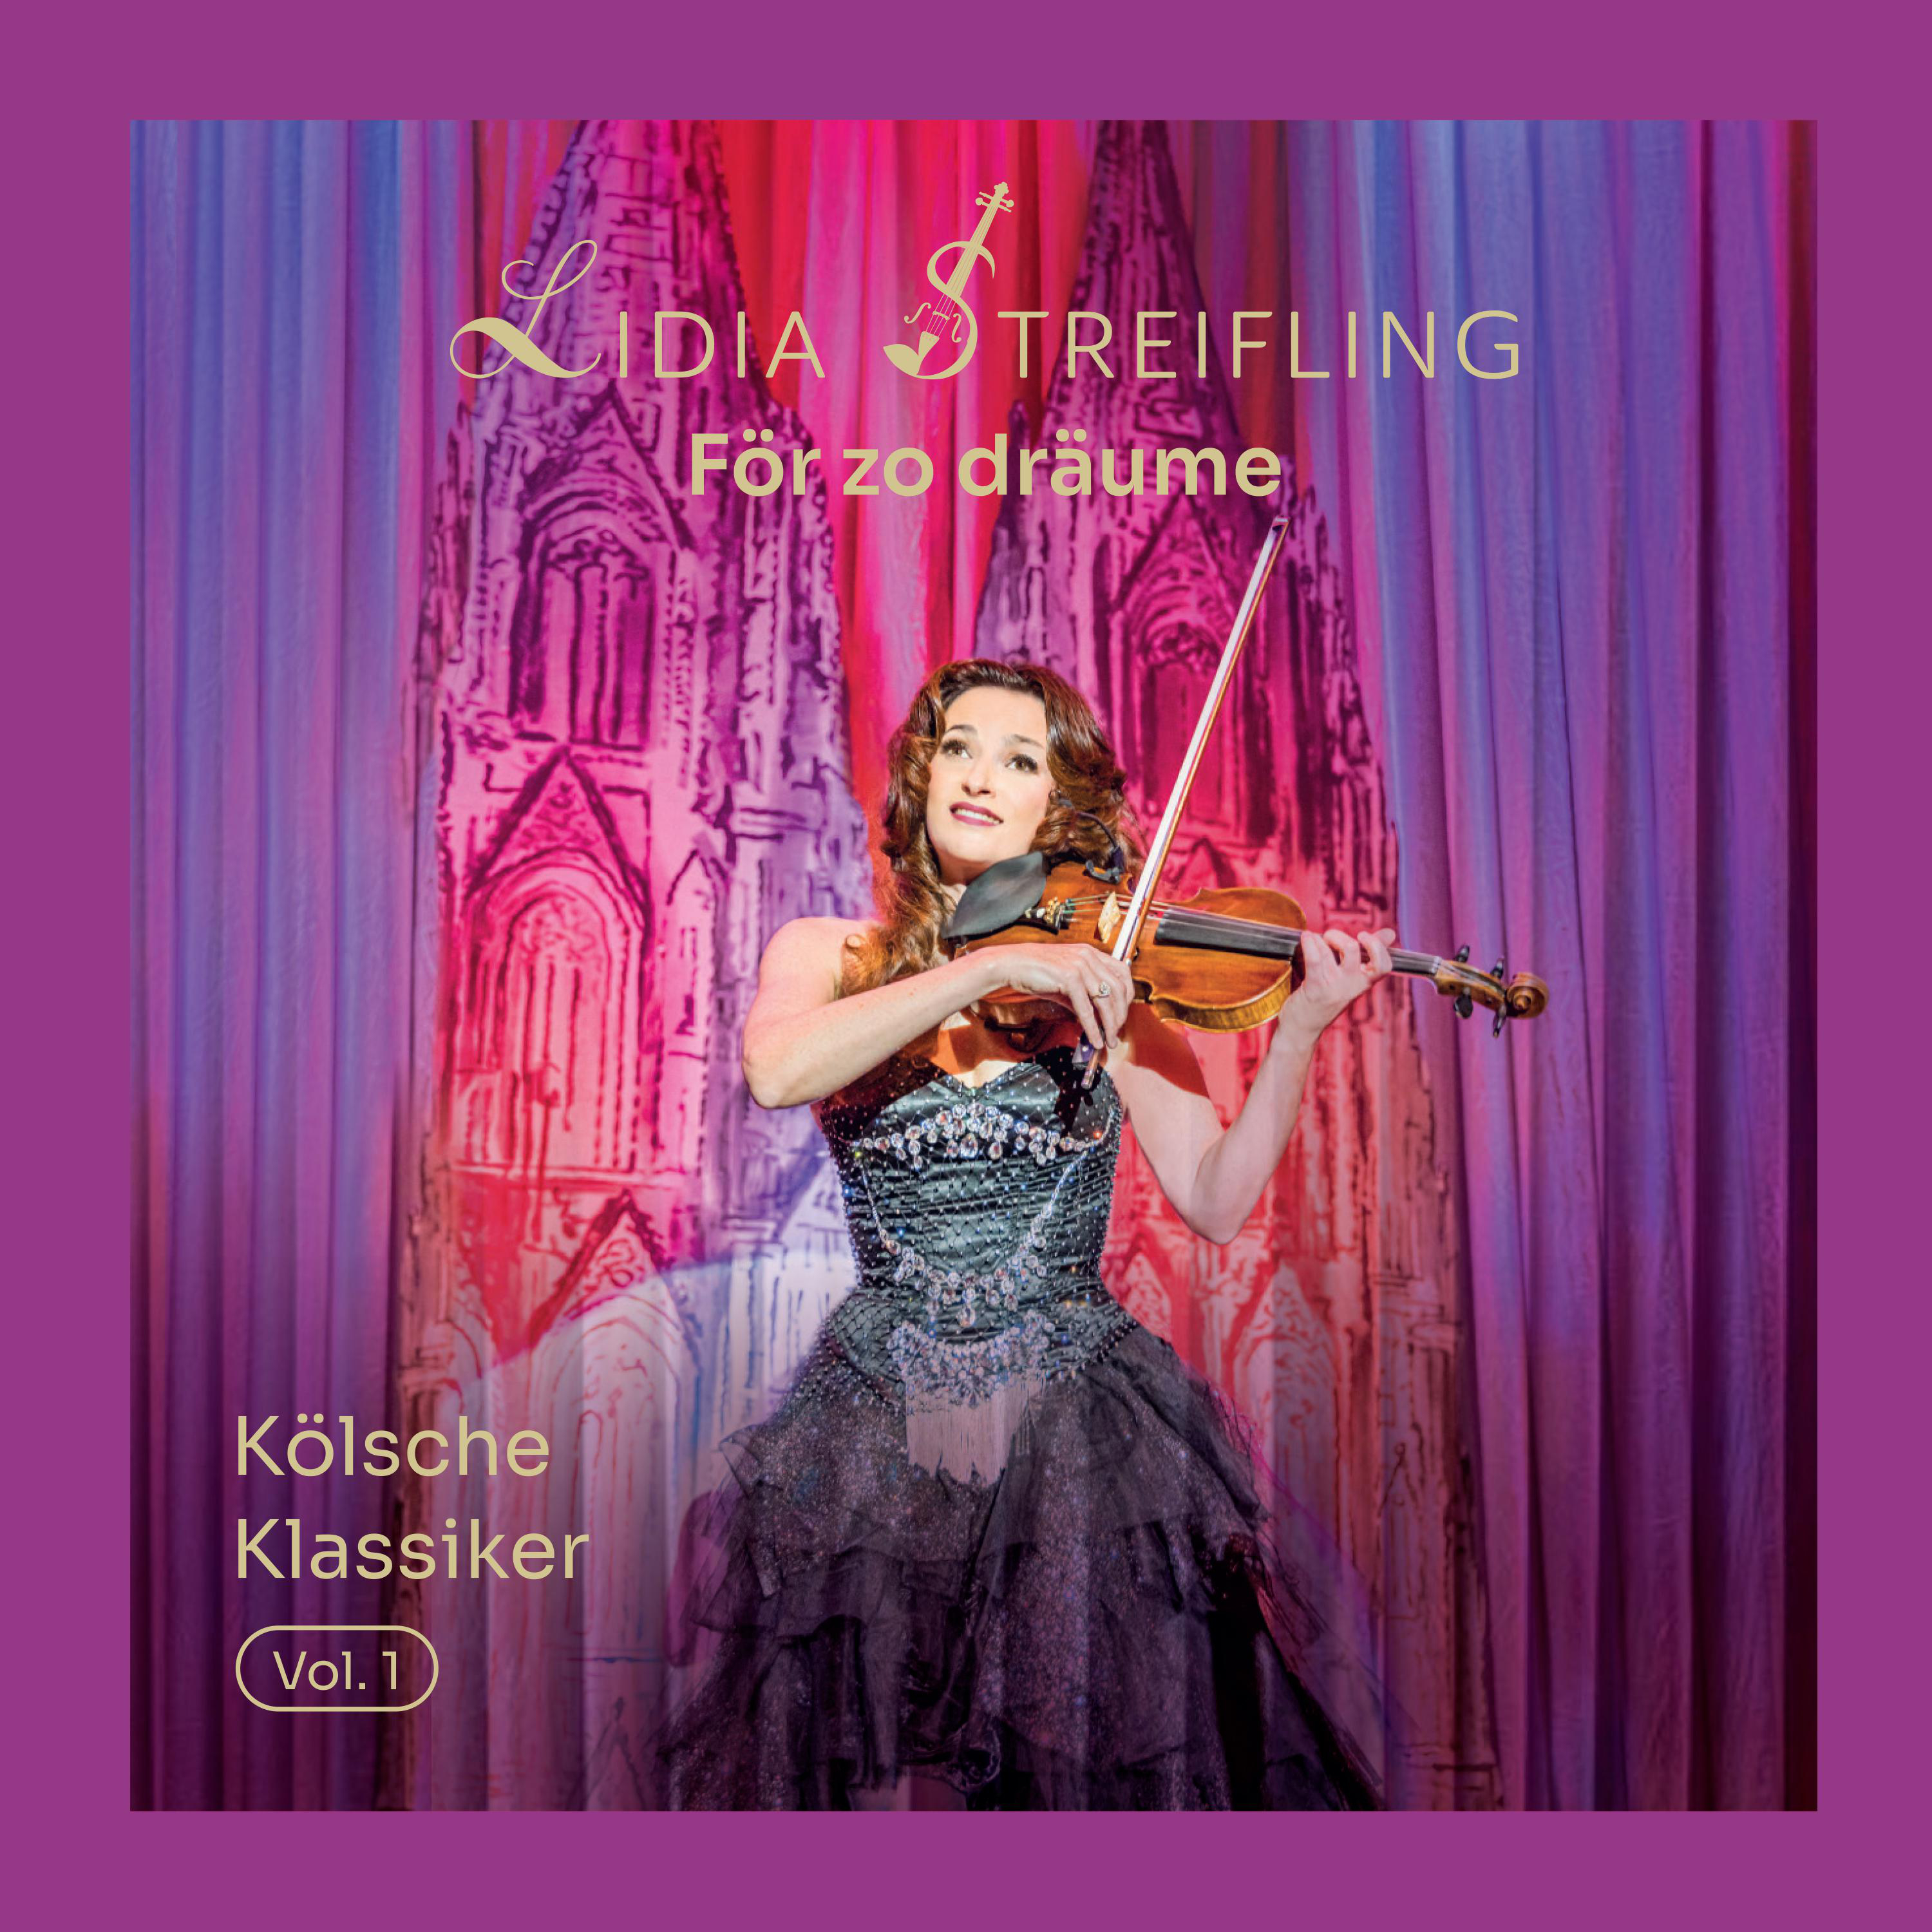 För - zo dräume - 1 (CD) Lidia Kölsche Streifling Klassiker - Vol.